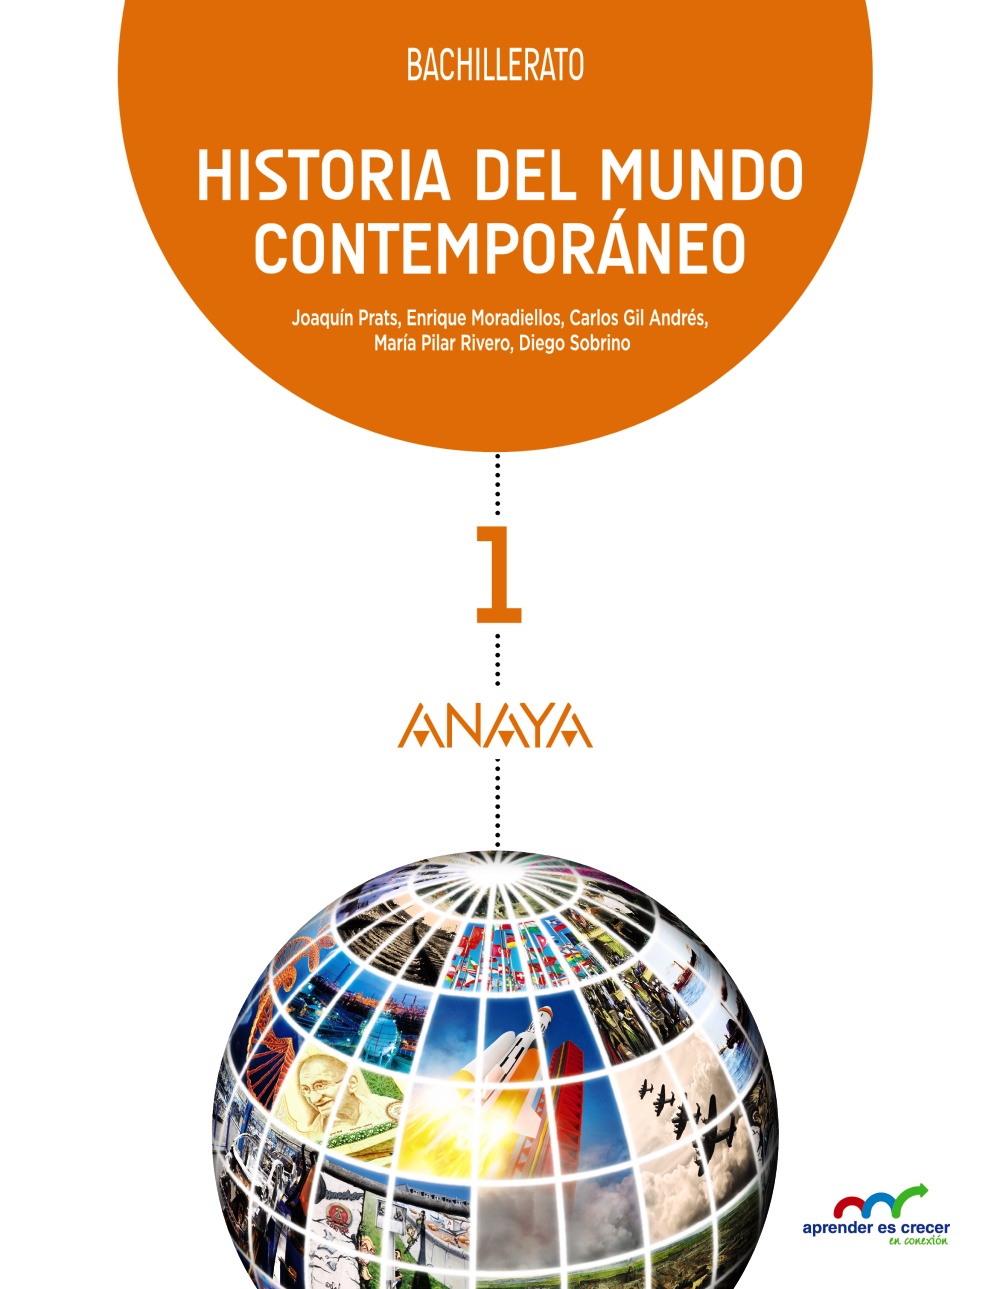 Solucionario Historia del Mundo Contemporaneo 1 Bachillerato Anaya Aprender es Crecer PDF Ejercicios Resueltos-pdf